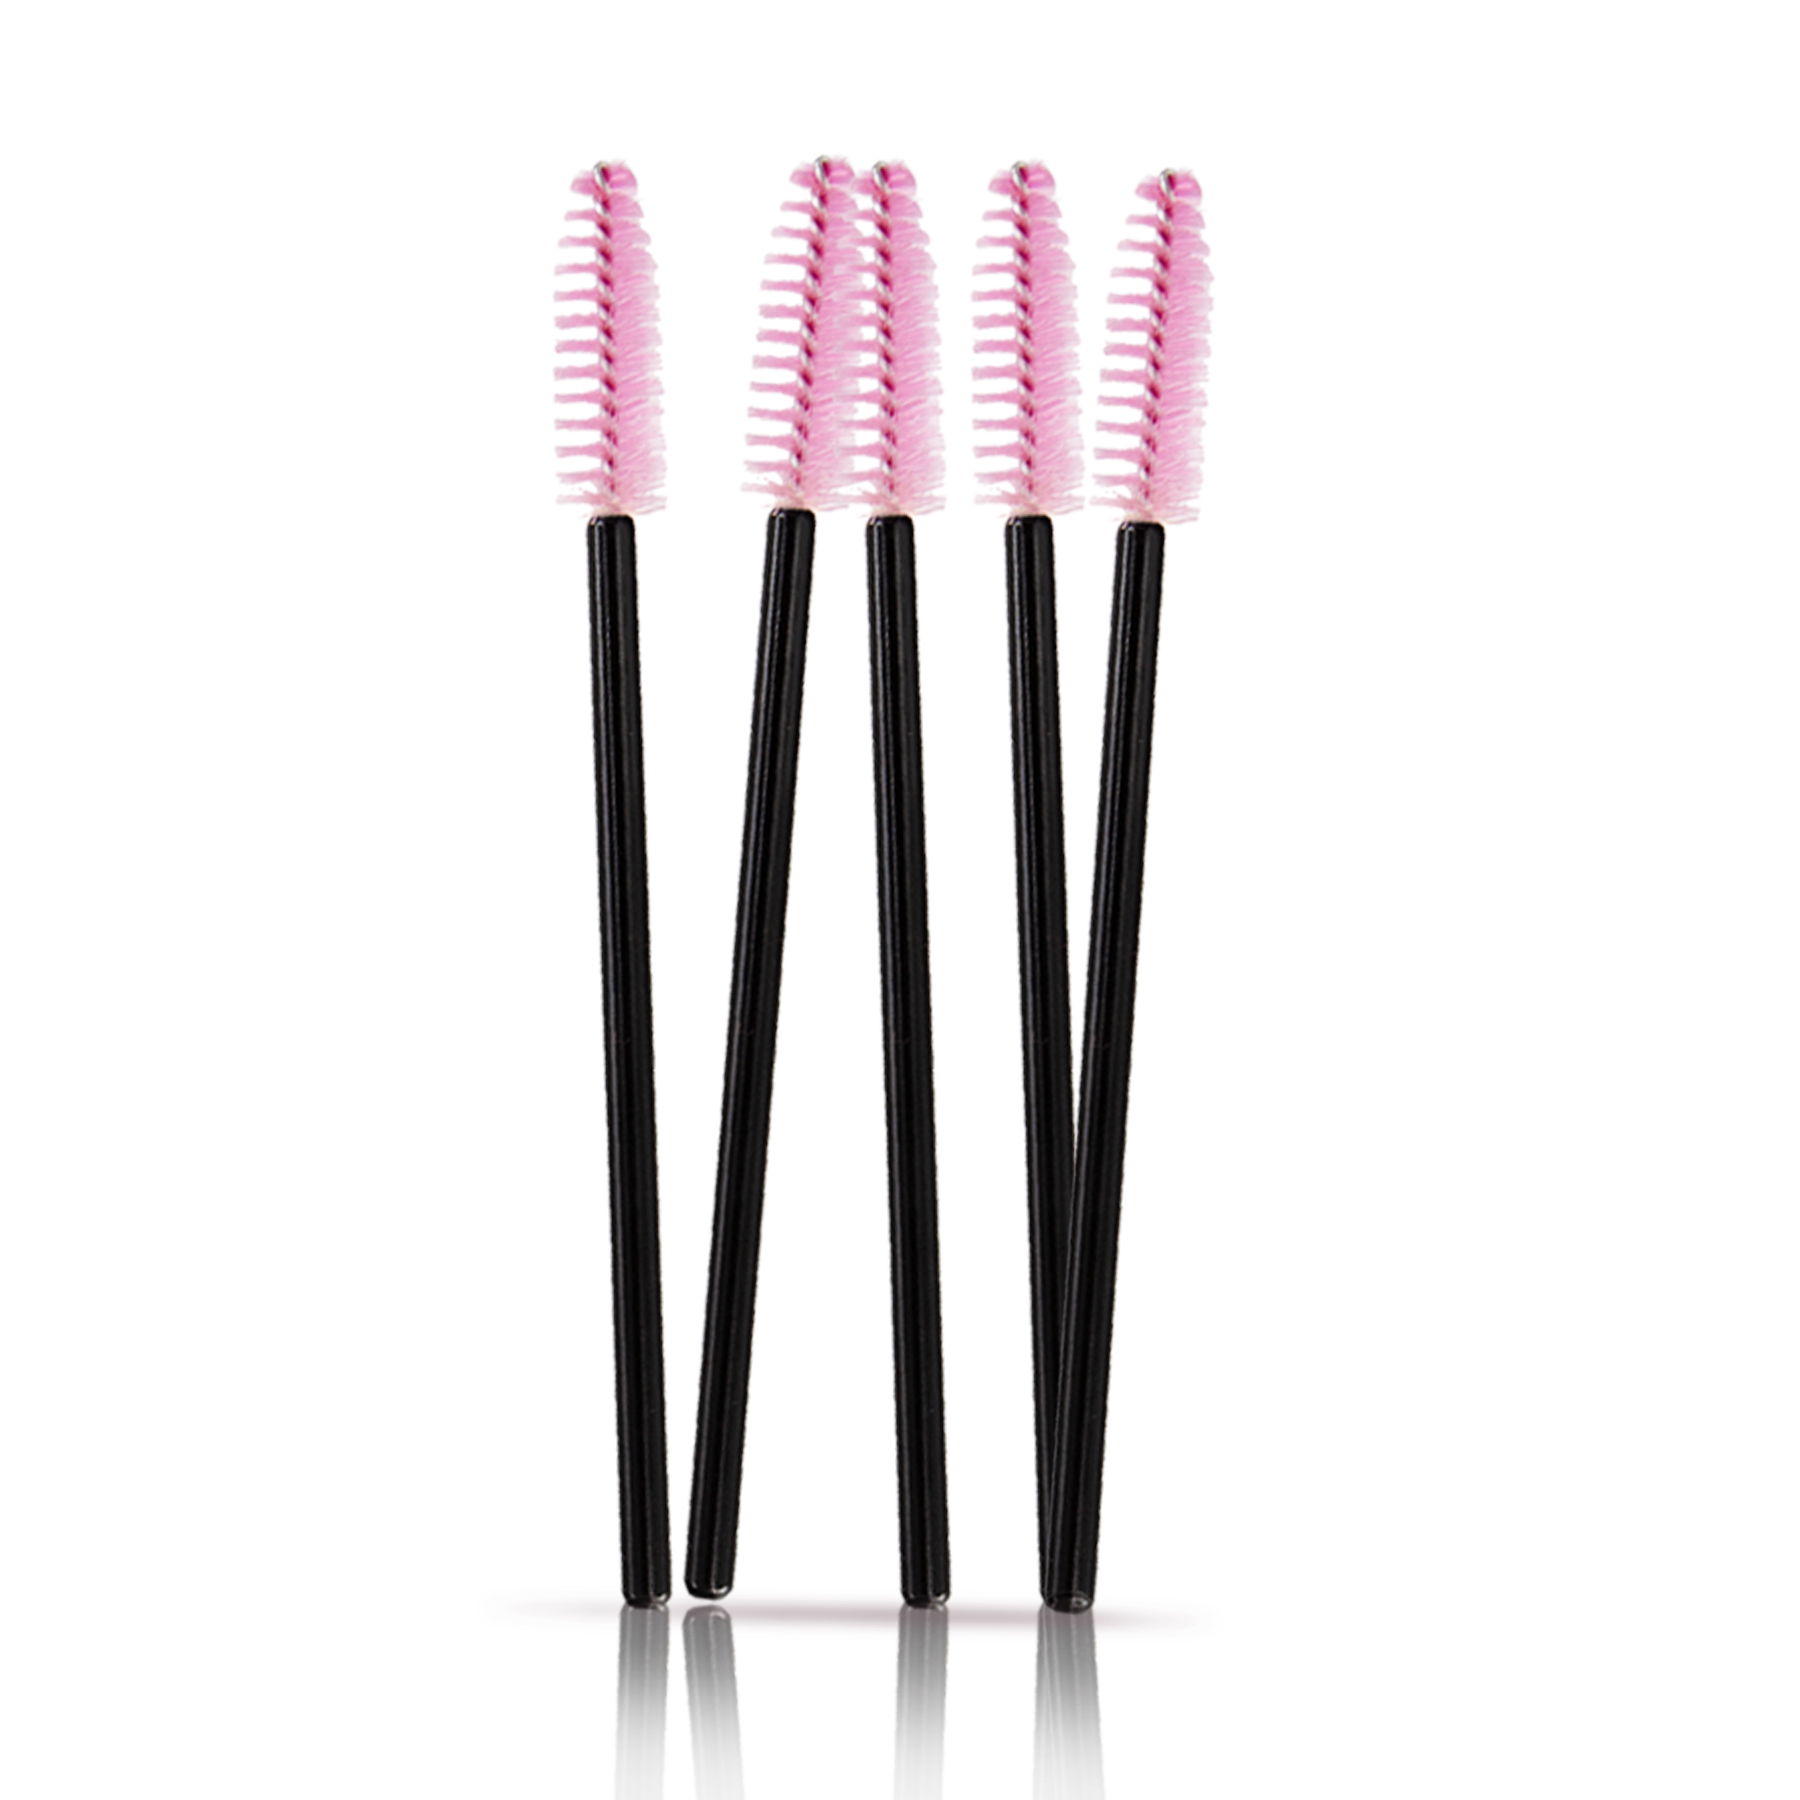 Microbrushes and mascara brushes set